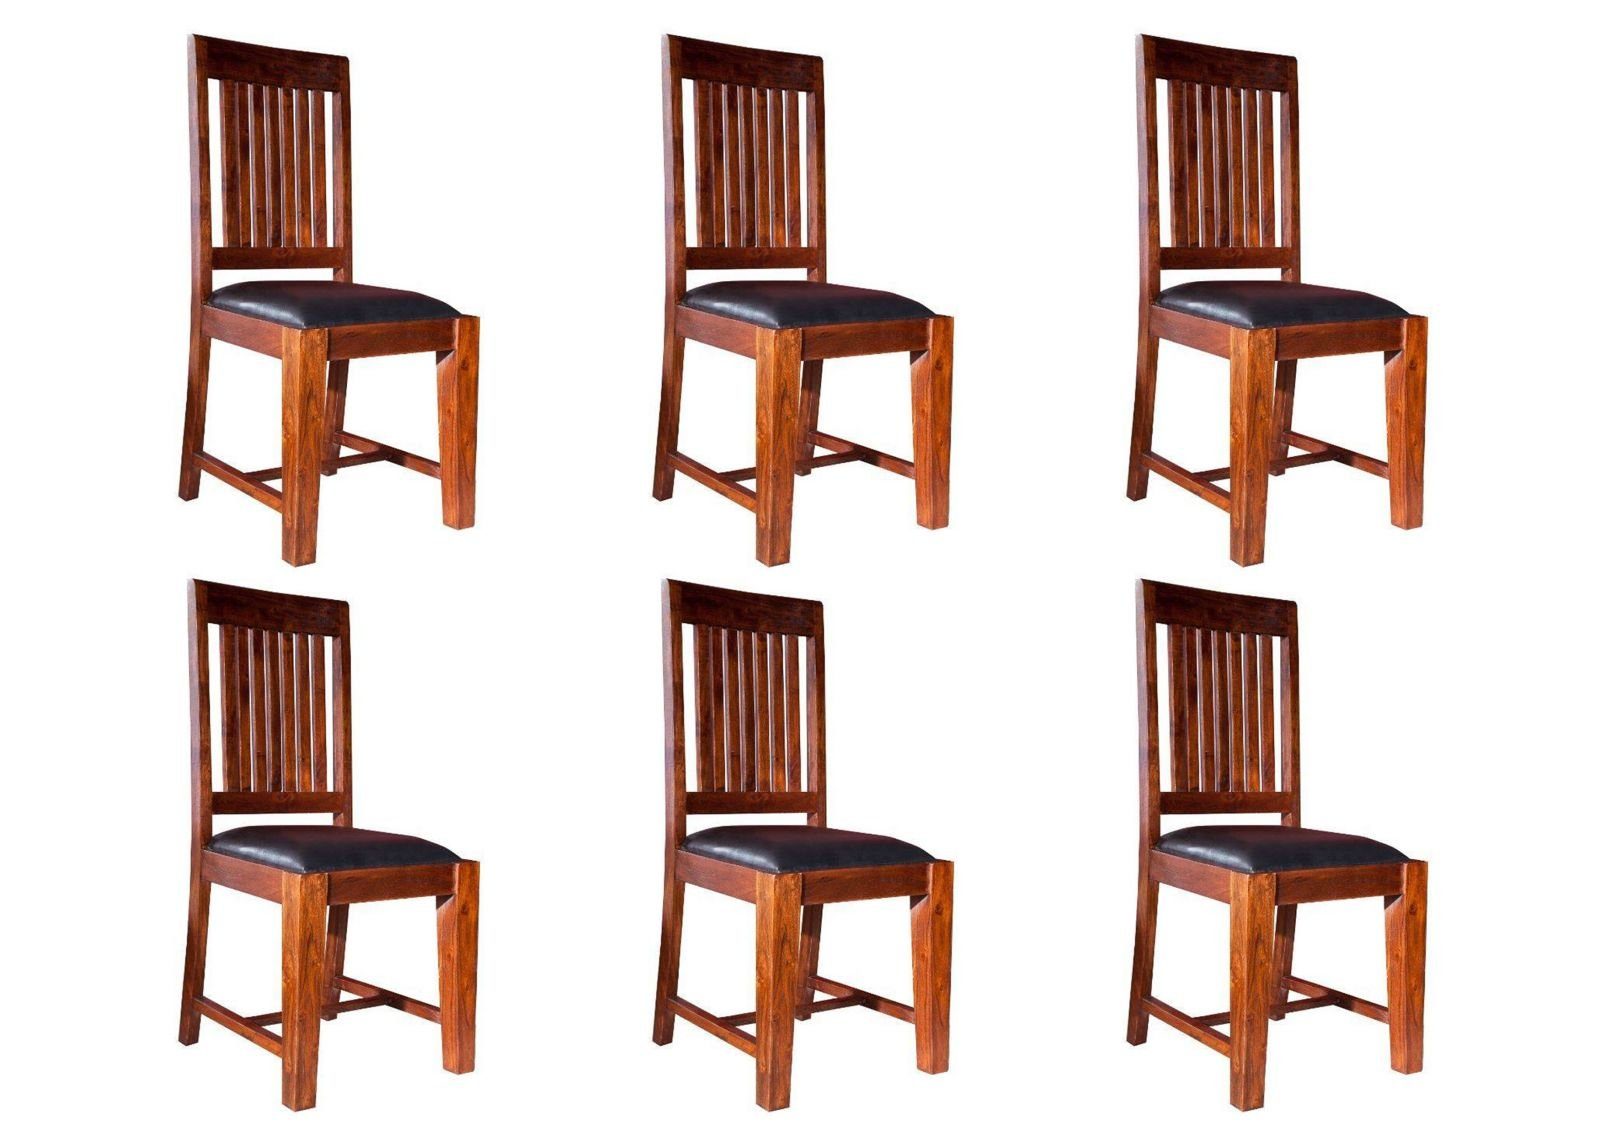 Massivmoebel24 Holzstuhl OXFORD Stuhl #15 mit Polster schwarz 6er Set 45x50x100 Akazie nougat dunkelbraun